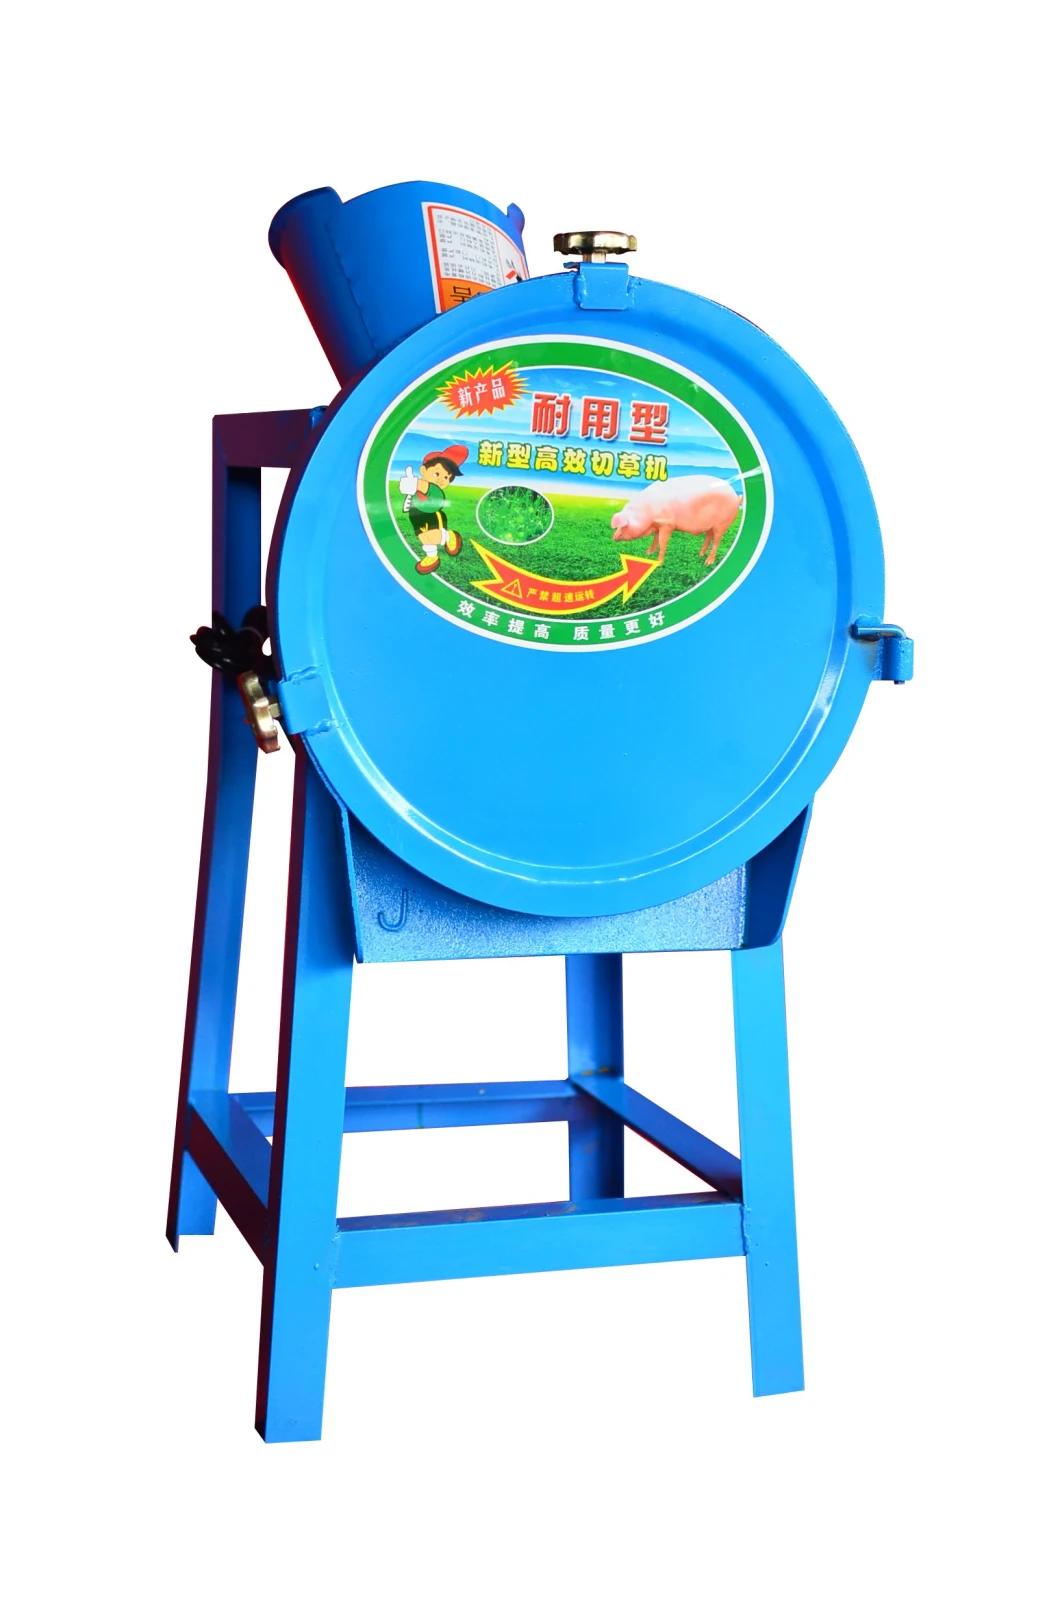 Food Processing Machine Fodder Cutter Machine for Farm Animal Feeding for Sale